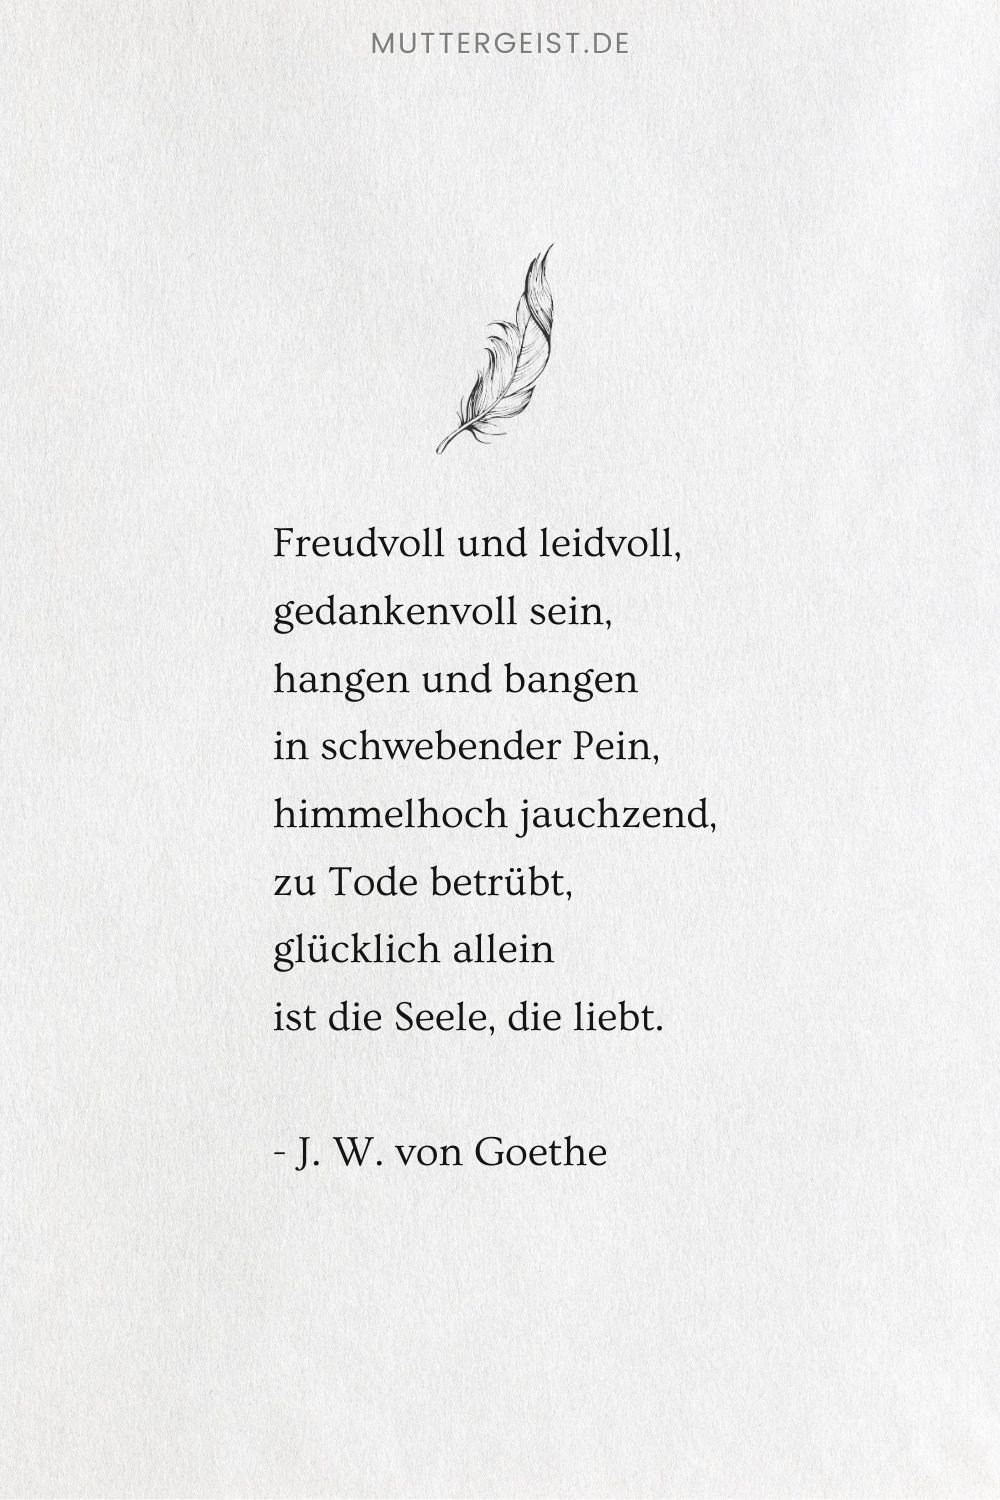 Johann Wolfgang von Goethes Spruch für die Seele